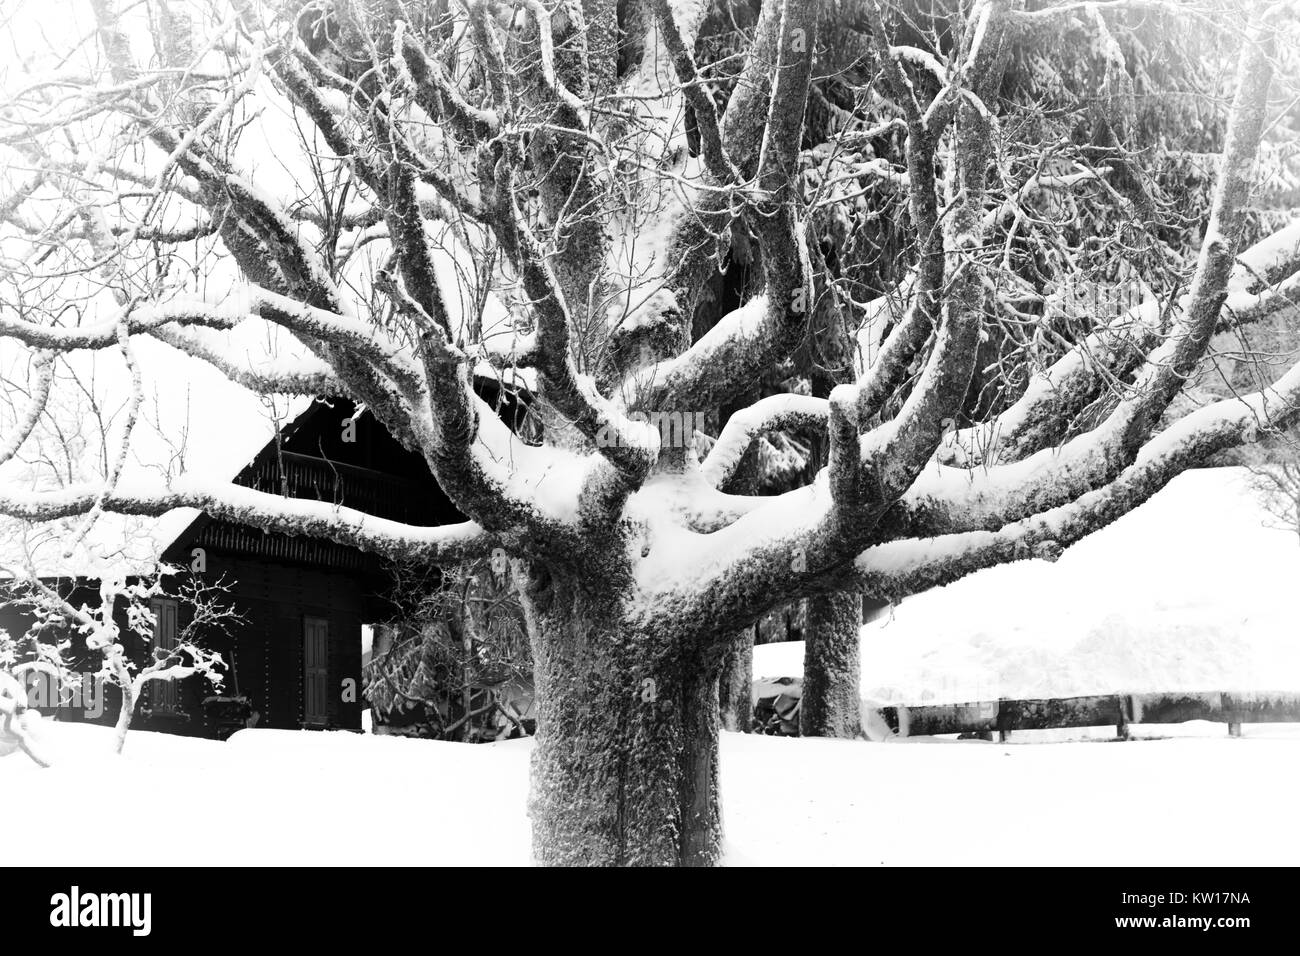 Antica, nodose, coperta di neve albero in inverno. In bianco e nero. Foto Stock